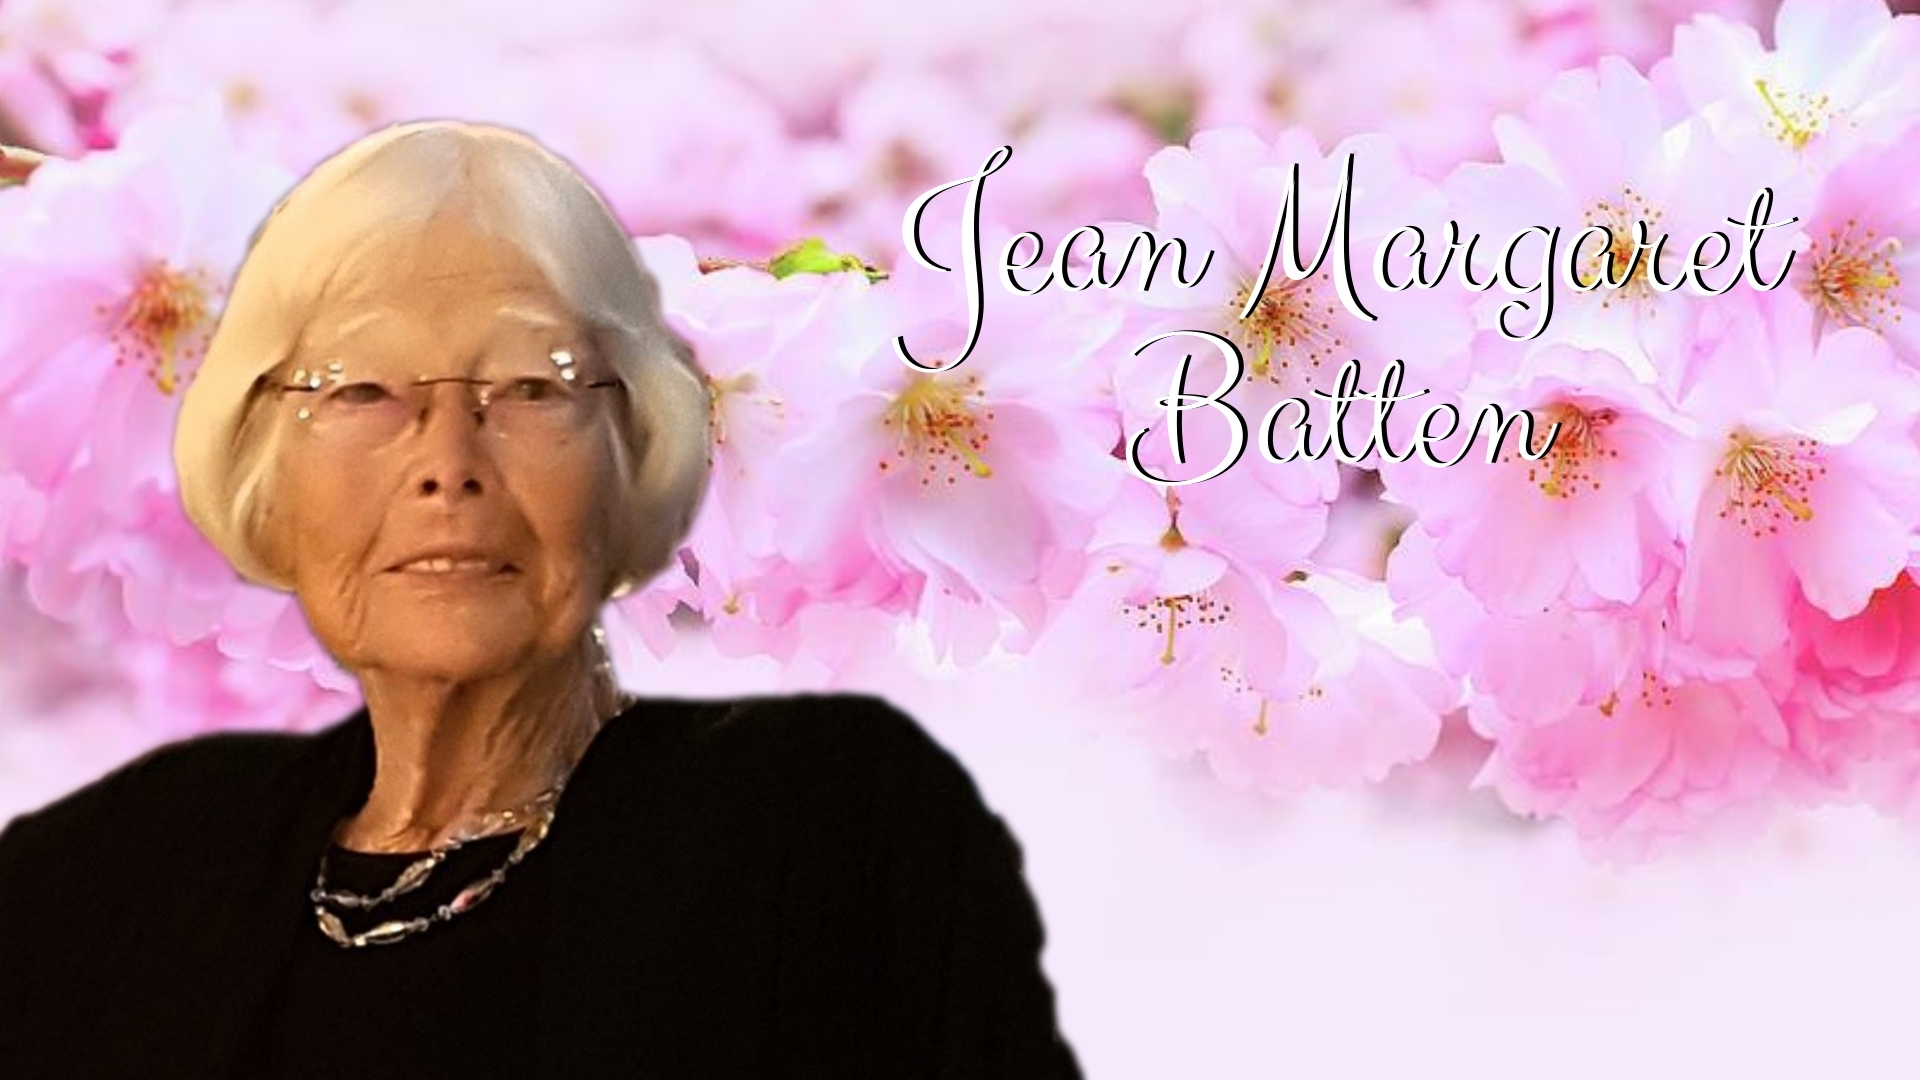 Jean Margaret Batten